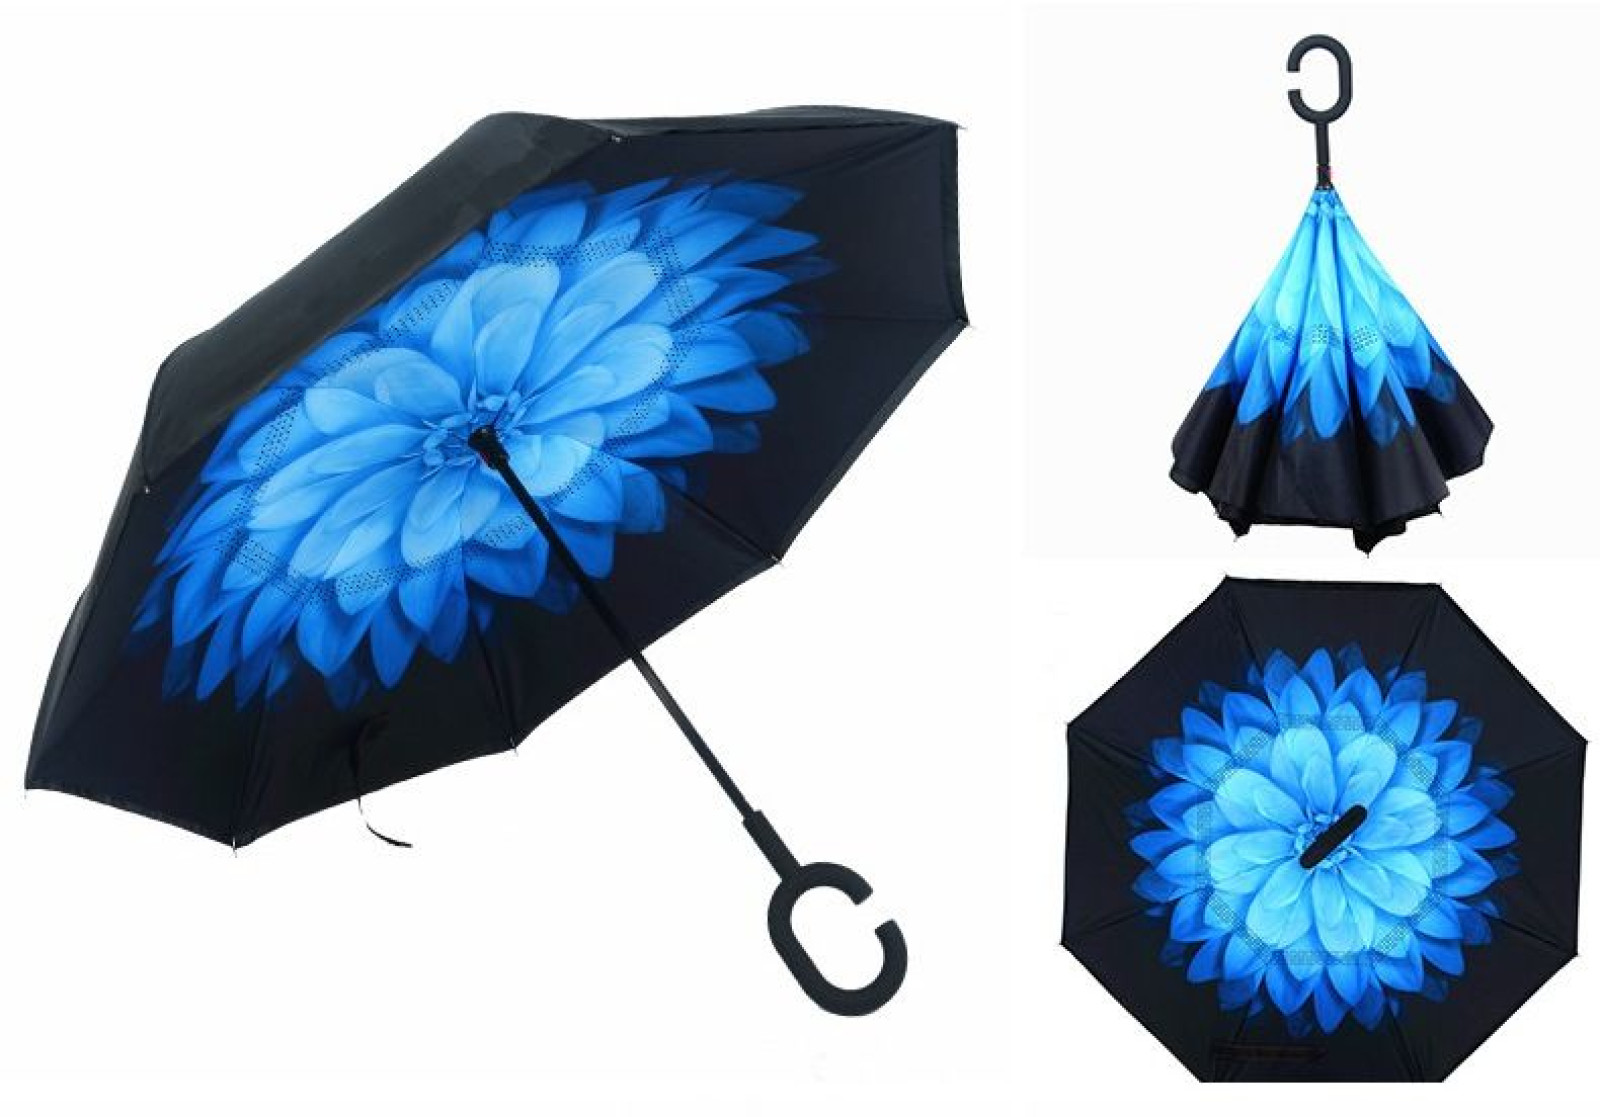 Зонт обратного сложения, антизонт, умный зонт, зонт наоборот Up Brella Цветок Голубой154306